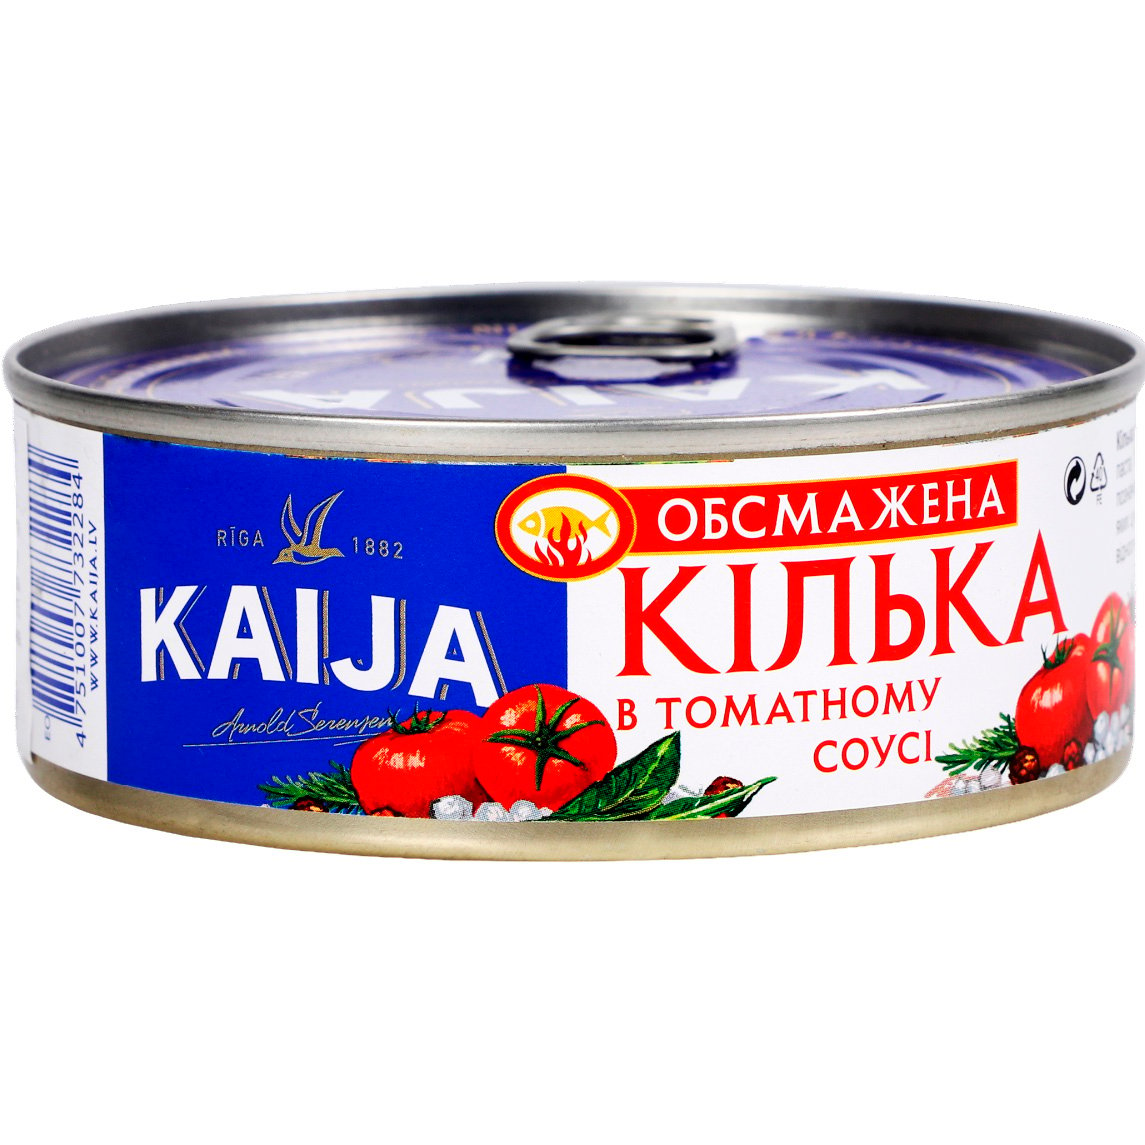 Килька Kaija обжаренная в томатном соусе 240 г (635567) - фото 1